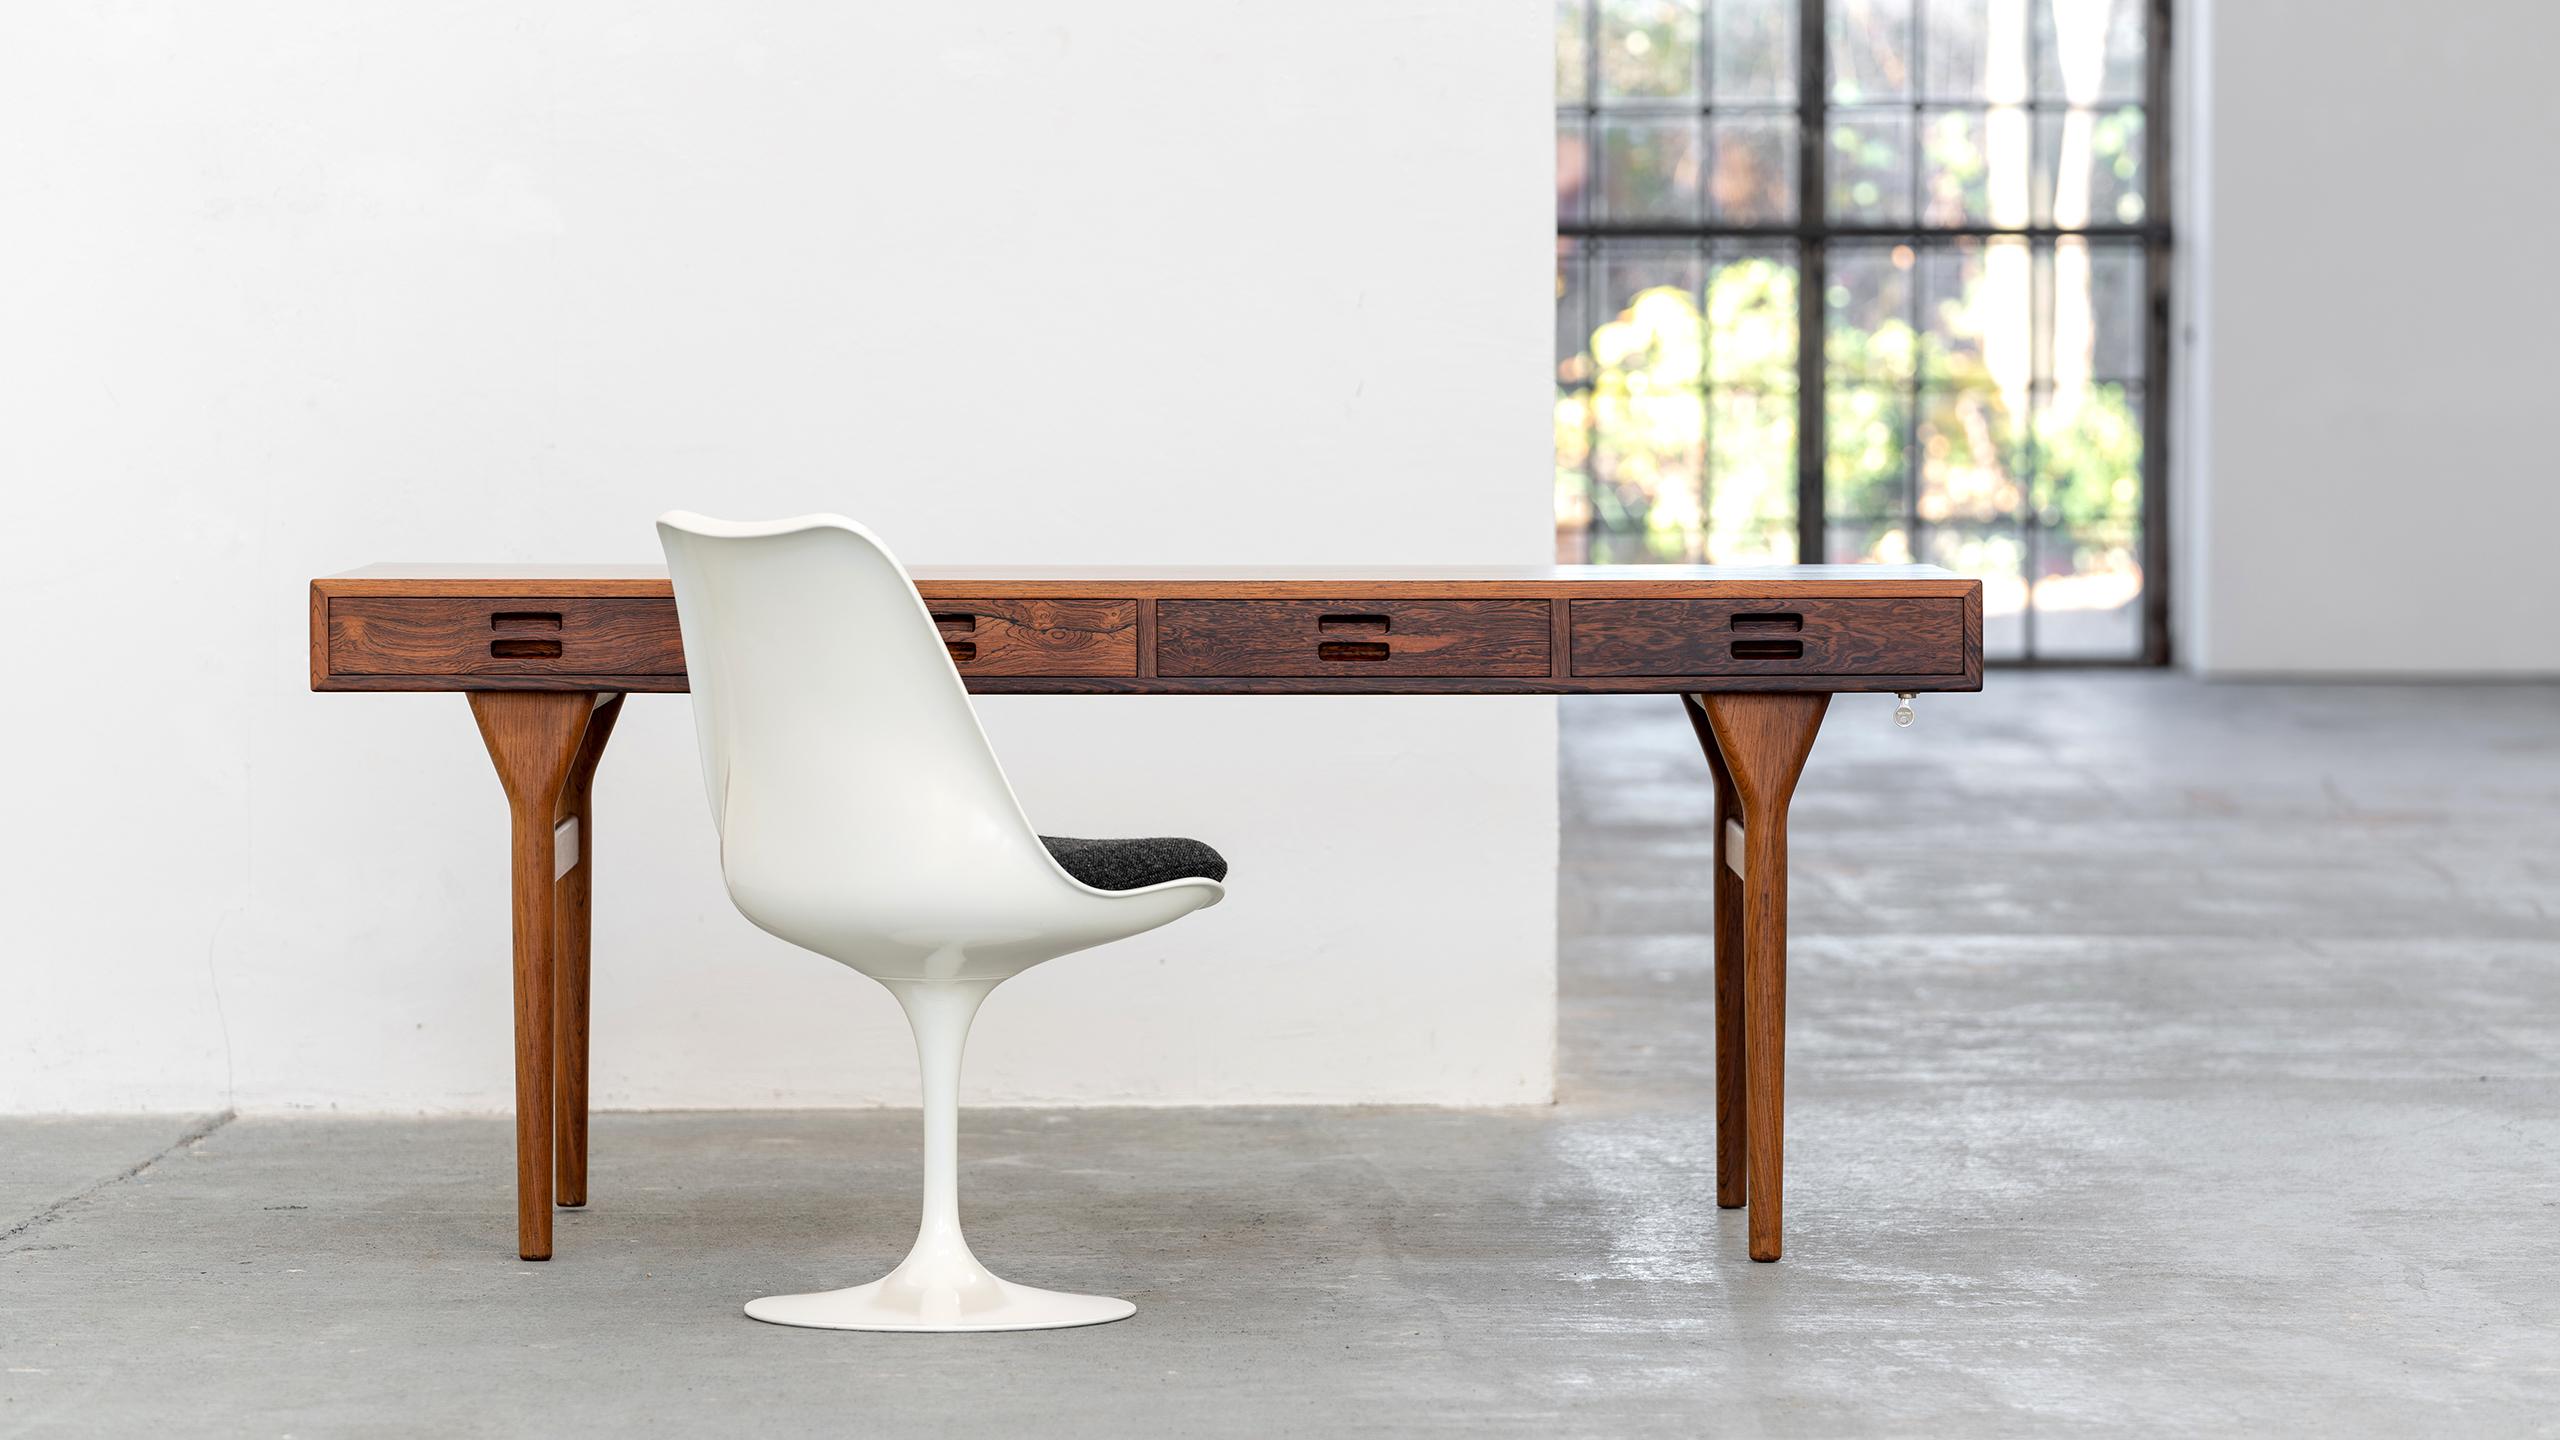 Dieser elegante Entwurf von Nanna & Jørgen Ditzel by Søren Willadsen dient als Schreibtisch, Schreibtisch, Bibliothekstisch, 
oder auch ein Konsolentisch in einem großen Raum. 

Die sparsame, minimale Form ist aus jedem Blickwinkel reizvoll.